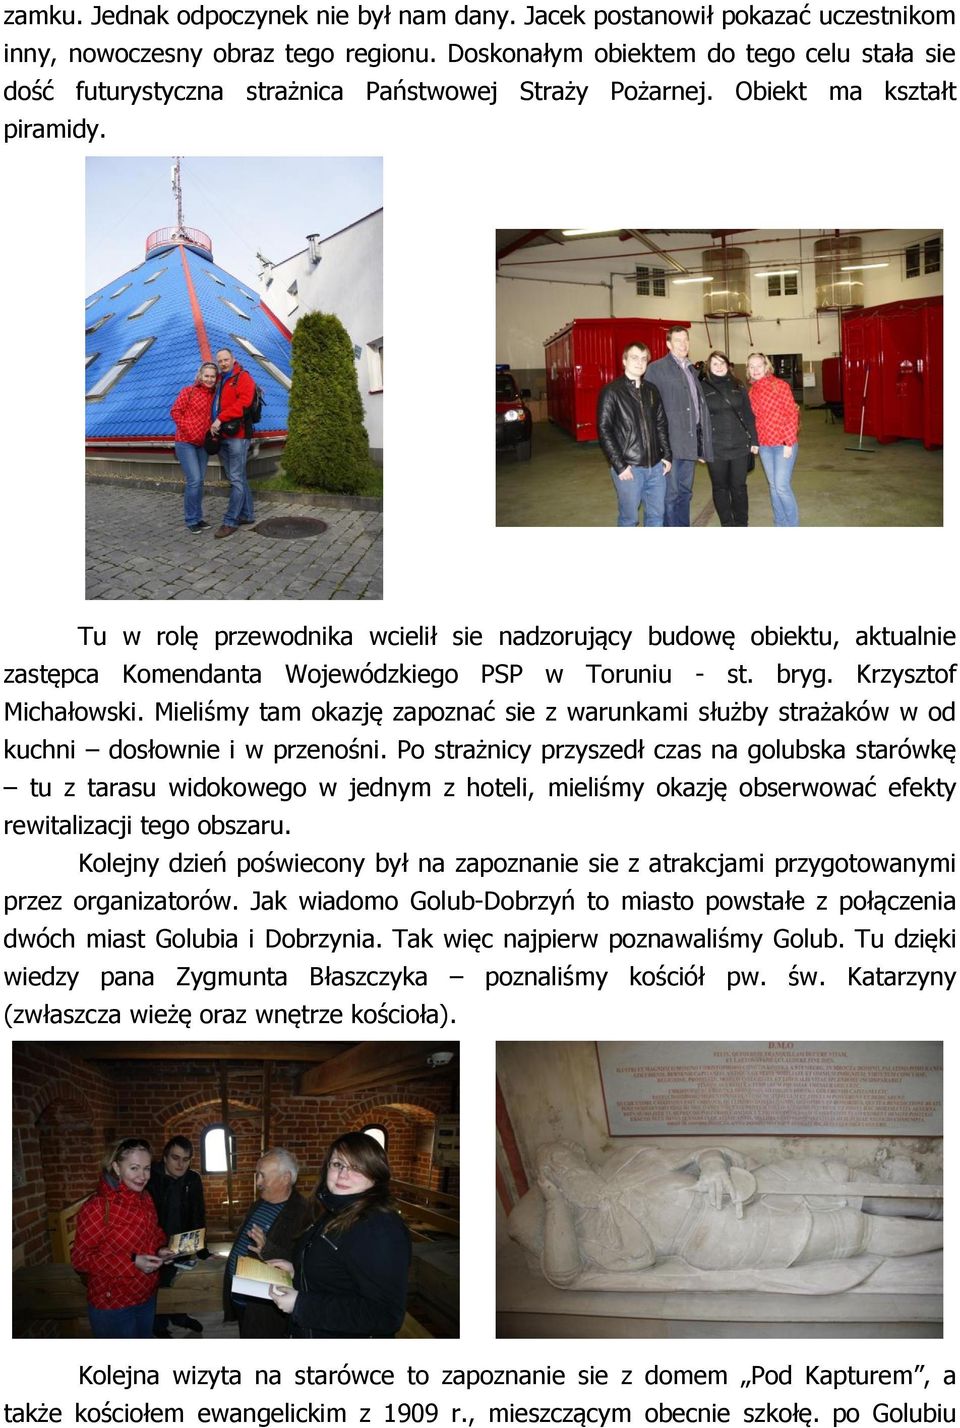 Tu w rolę przewodnika wcielił sie nadzorujący budowę obiektu, aktualnie zastępca Komendanta Wojewódzkiego PSP w Toruniu - st. bryg. Krzysztof Michałowski.